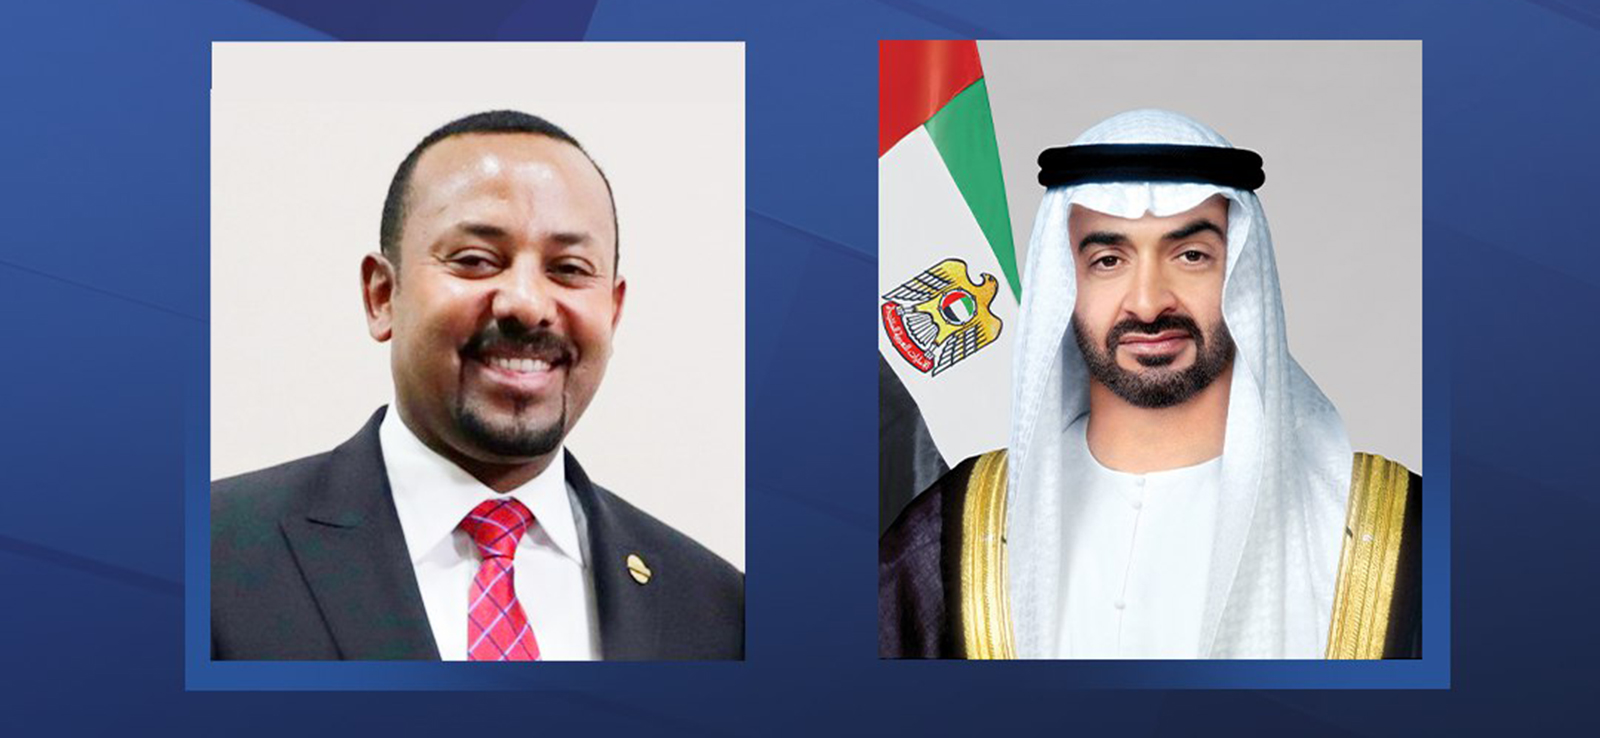 رئيس الدولة ورئيس وزراء إثيوبيا يشهدان توقيع اتفاقيات تعاون بين البلدين